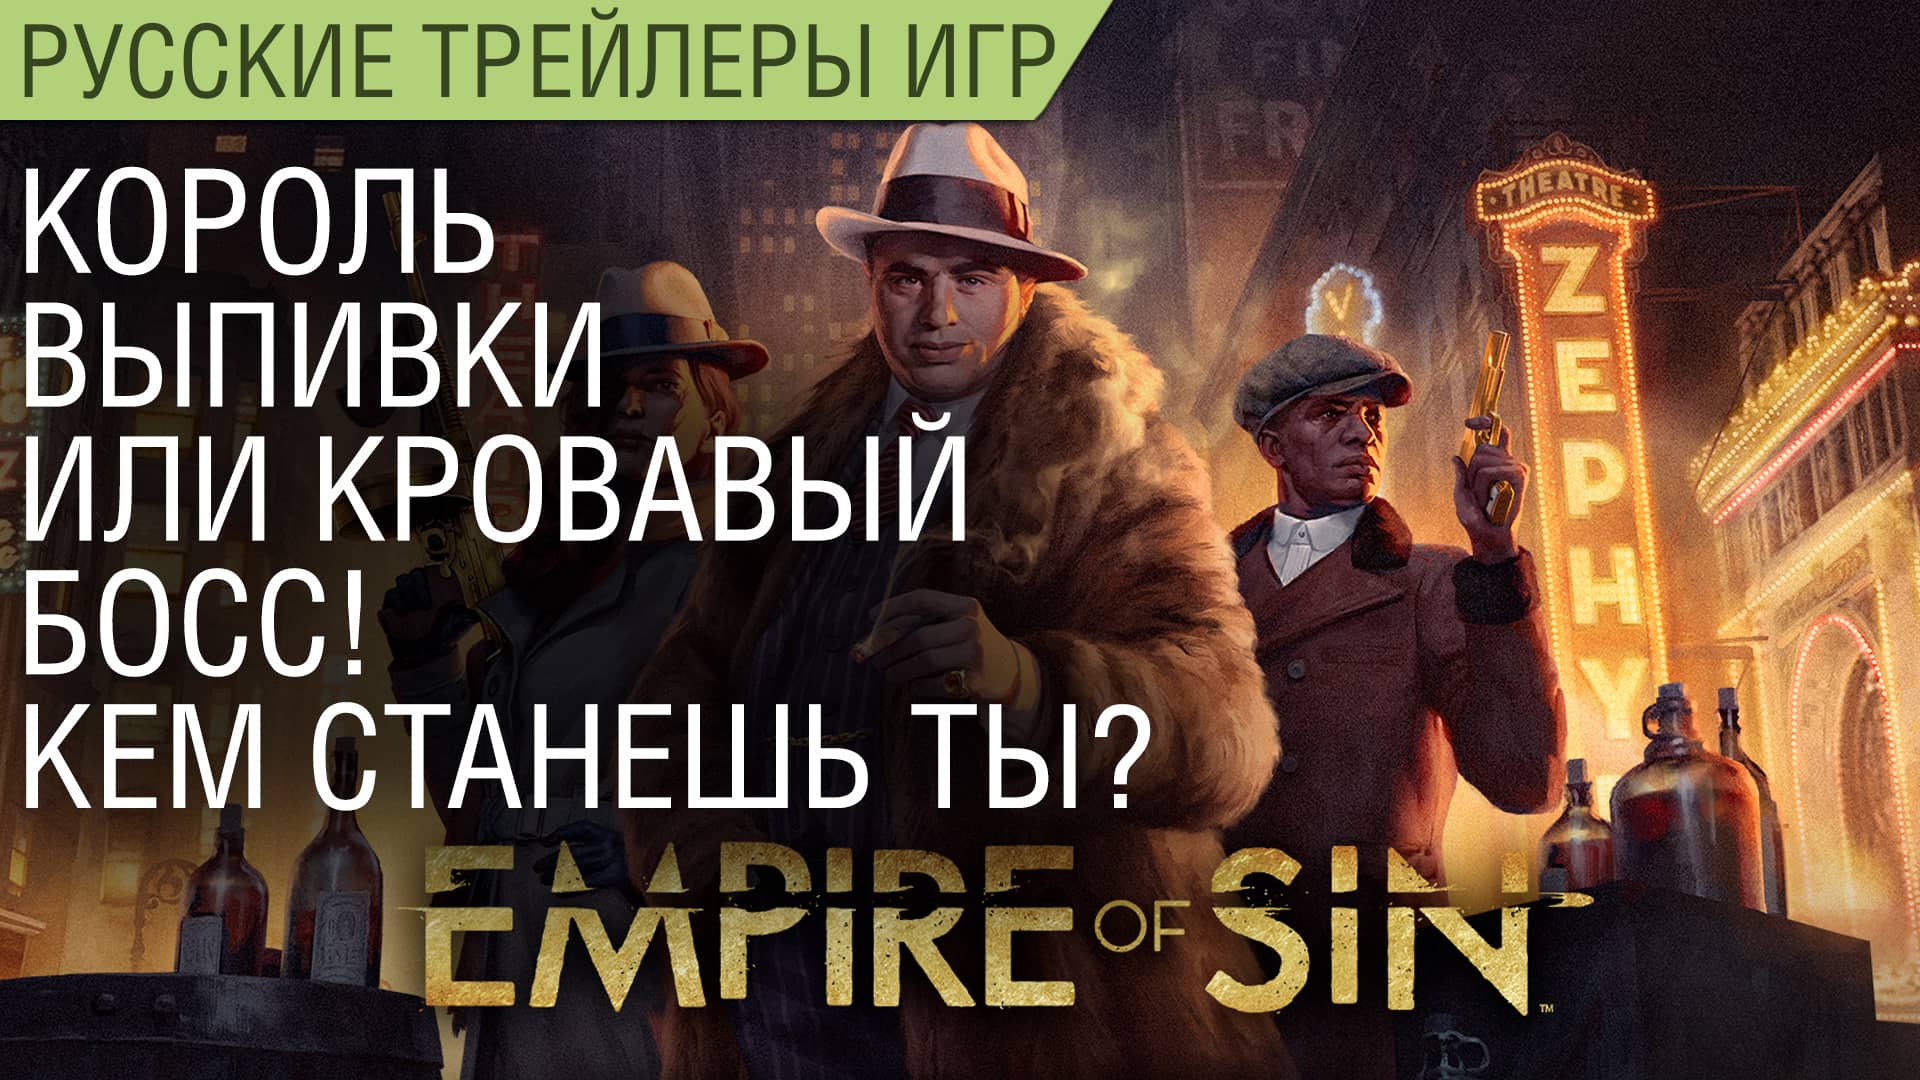 Empire of Sin - Король выпивки или кровавый босс! Кем станешь ты? - На русском